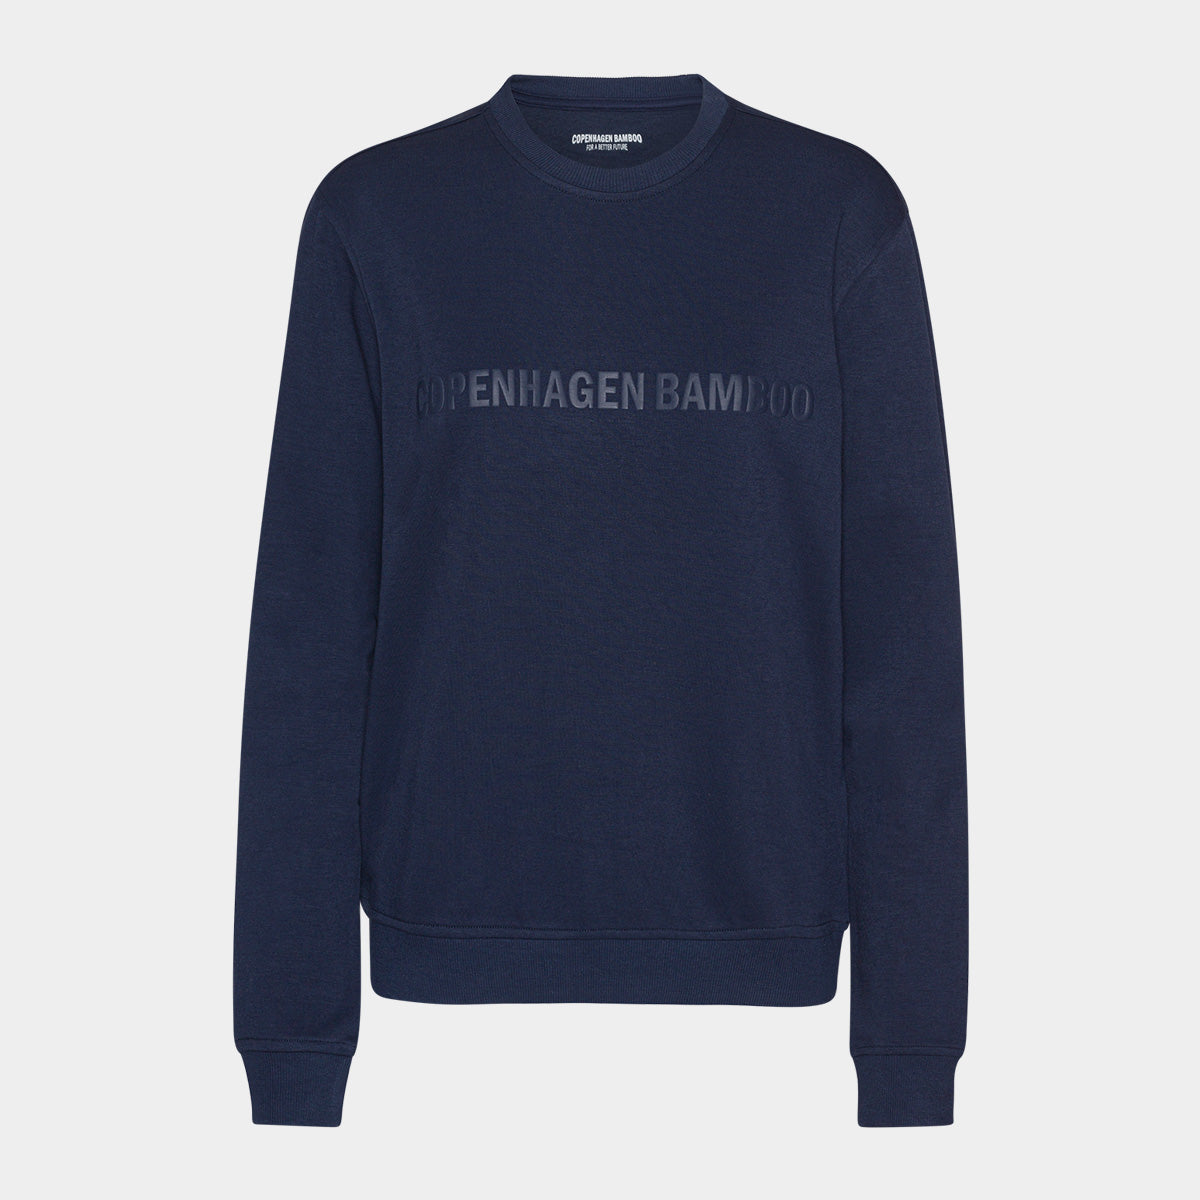 Se Navy bambus sweatshirt til mænd med logo fra Copenhagen Bamboo, XXL hos Bambustøj.dk